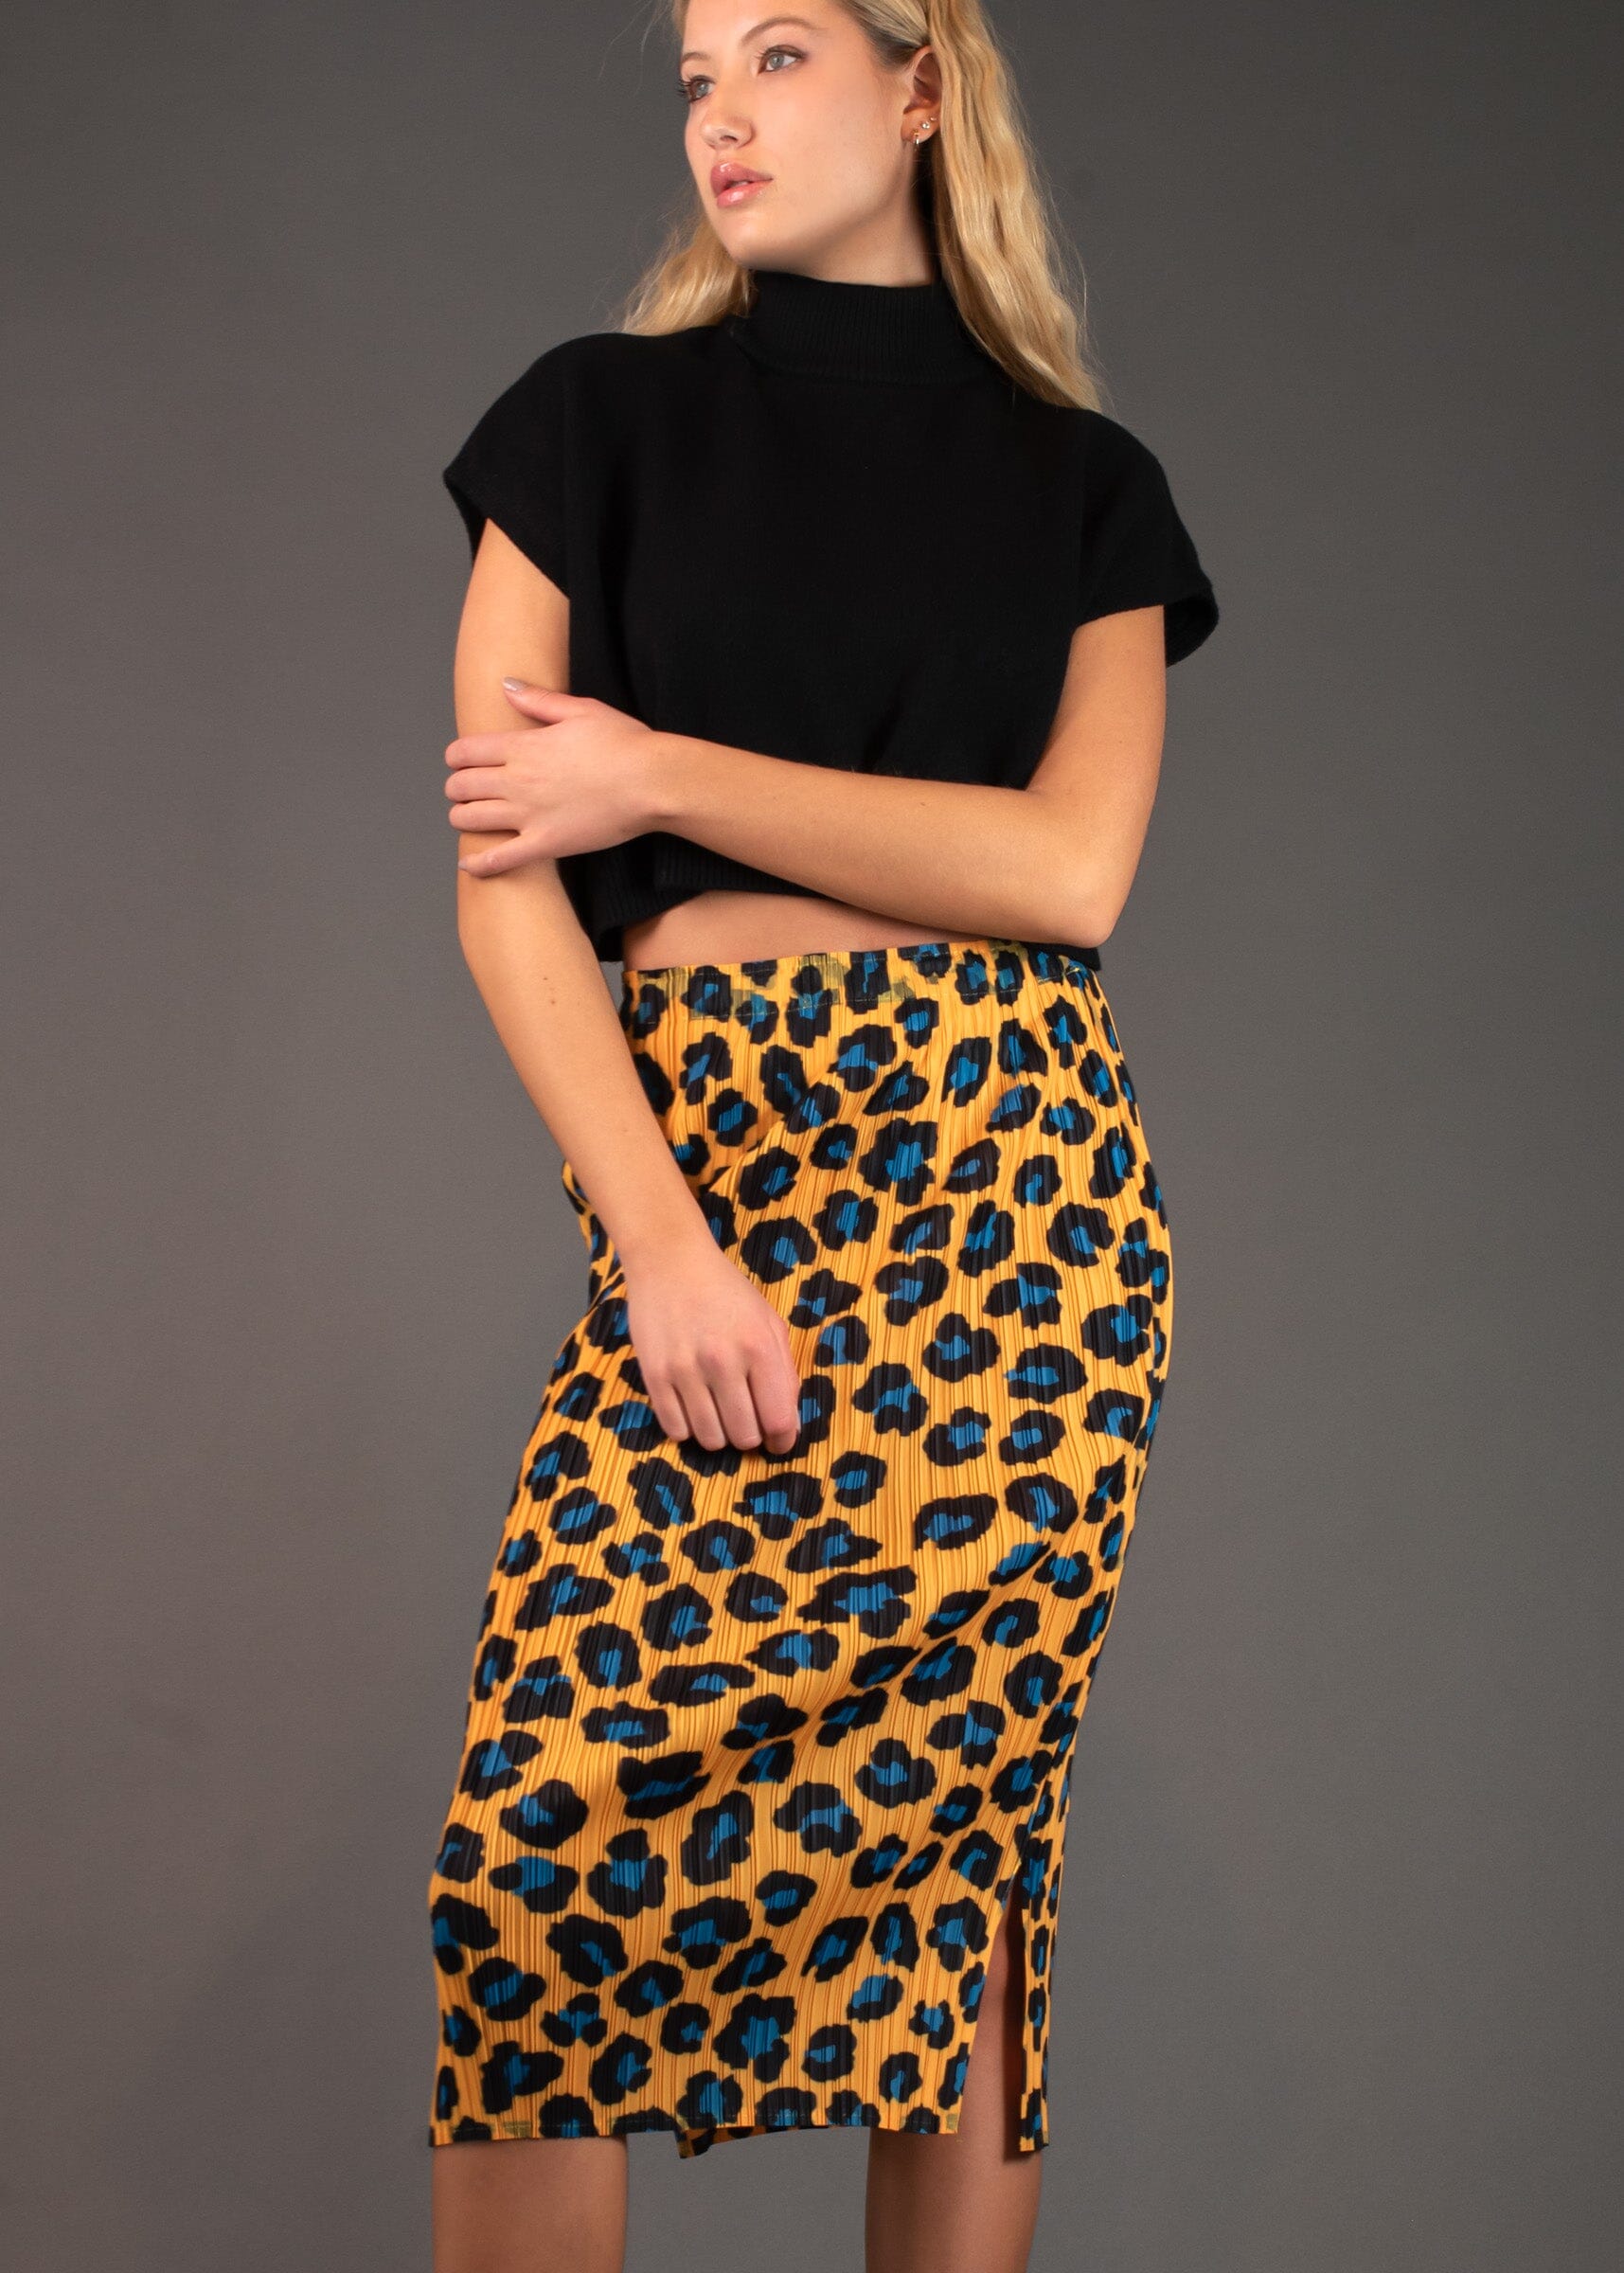 Leopard Print Tube Skirt - Kate Hewko